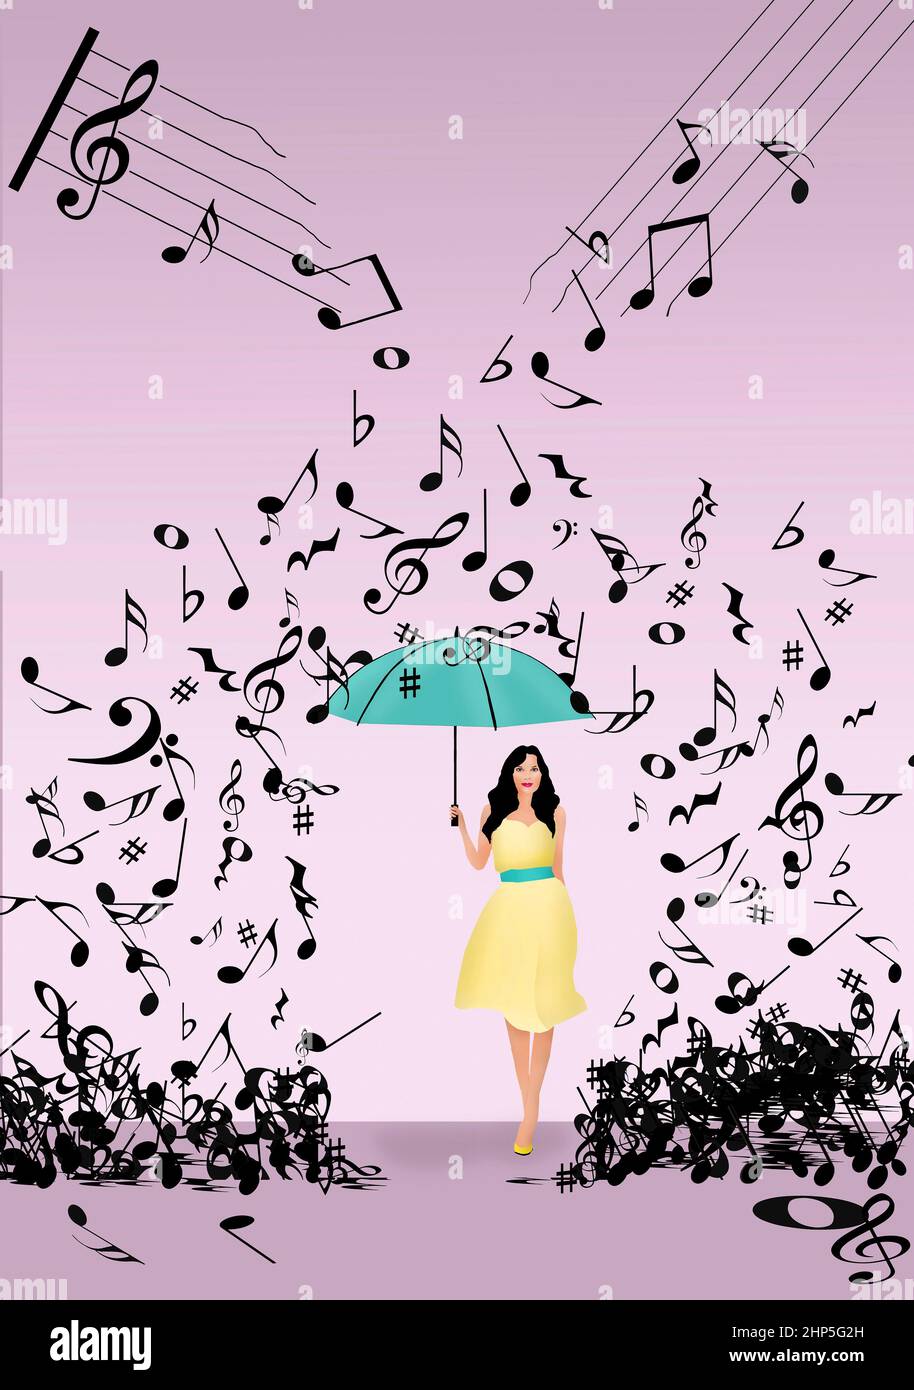 Musik, Musik und mehr Musik regnen auf eine junge Frau herab, die sich mit einem Regenschirm in einer 3-d-Illustration beschützt. Stockfoto